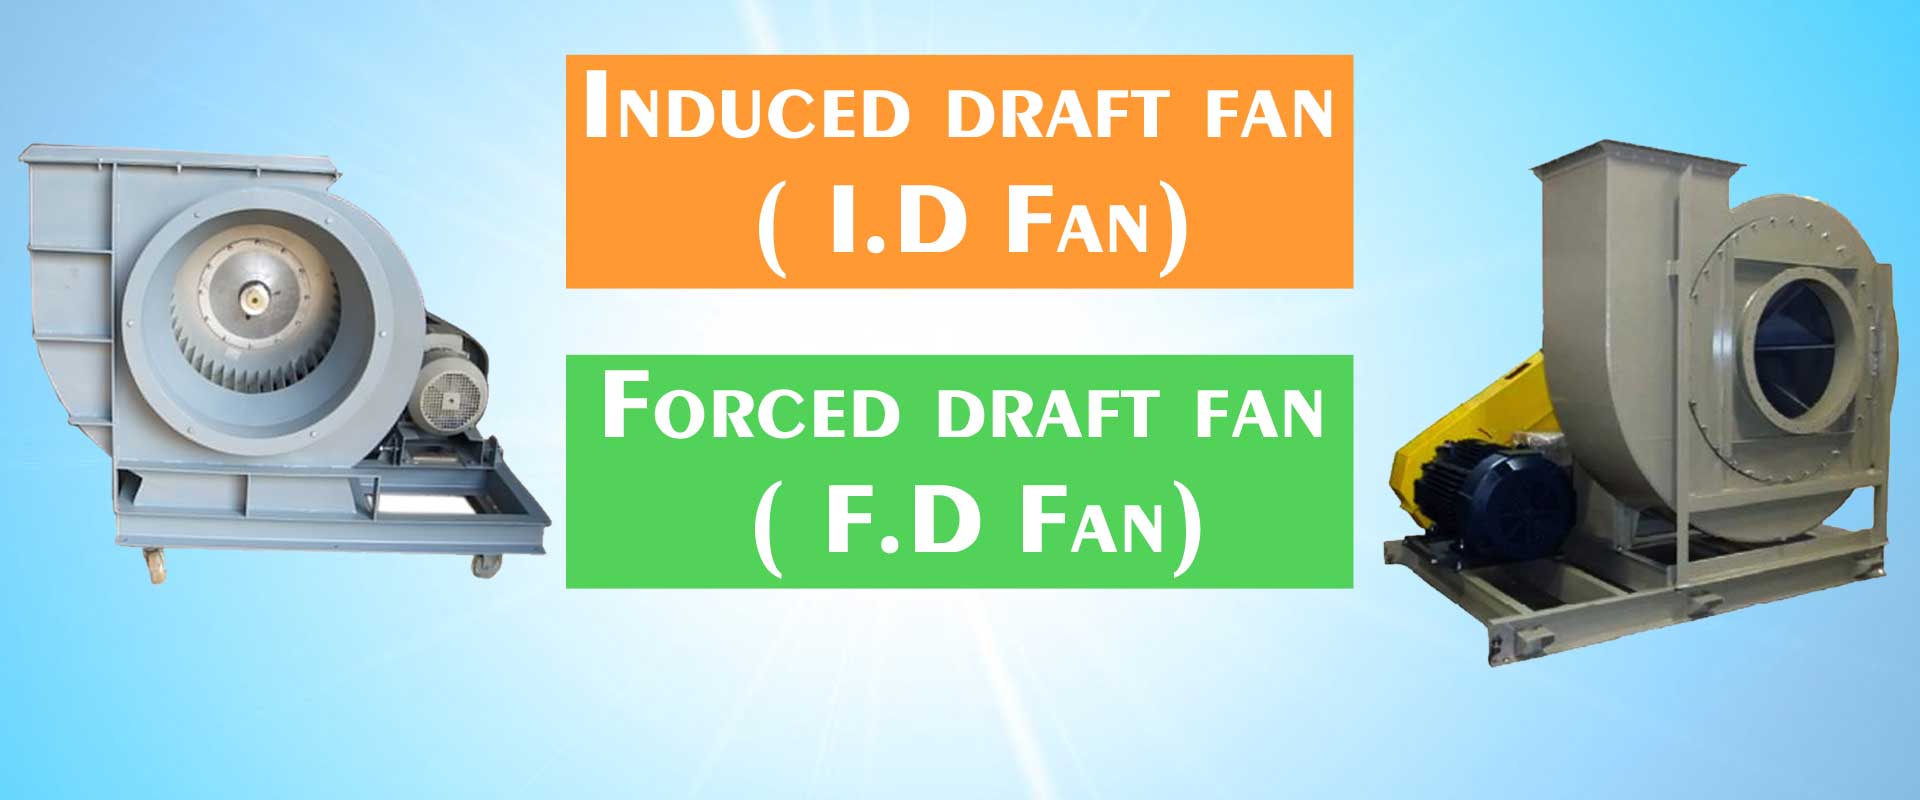 I.D Fan / F.D Fan